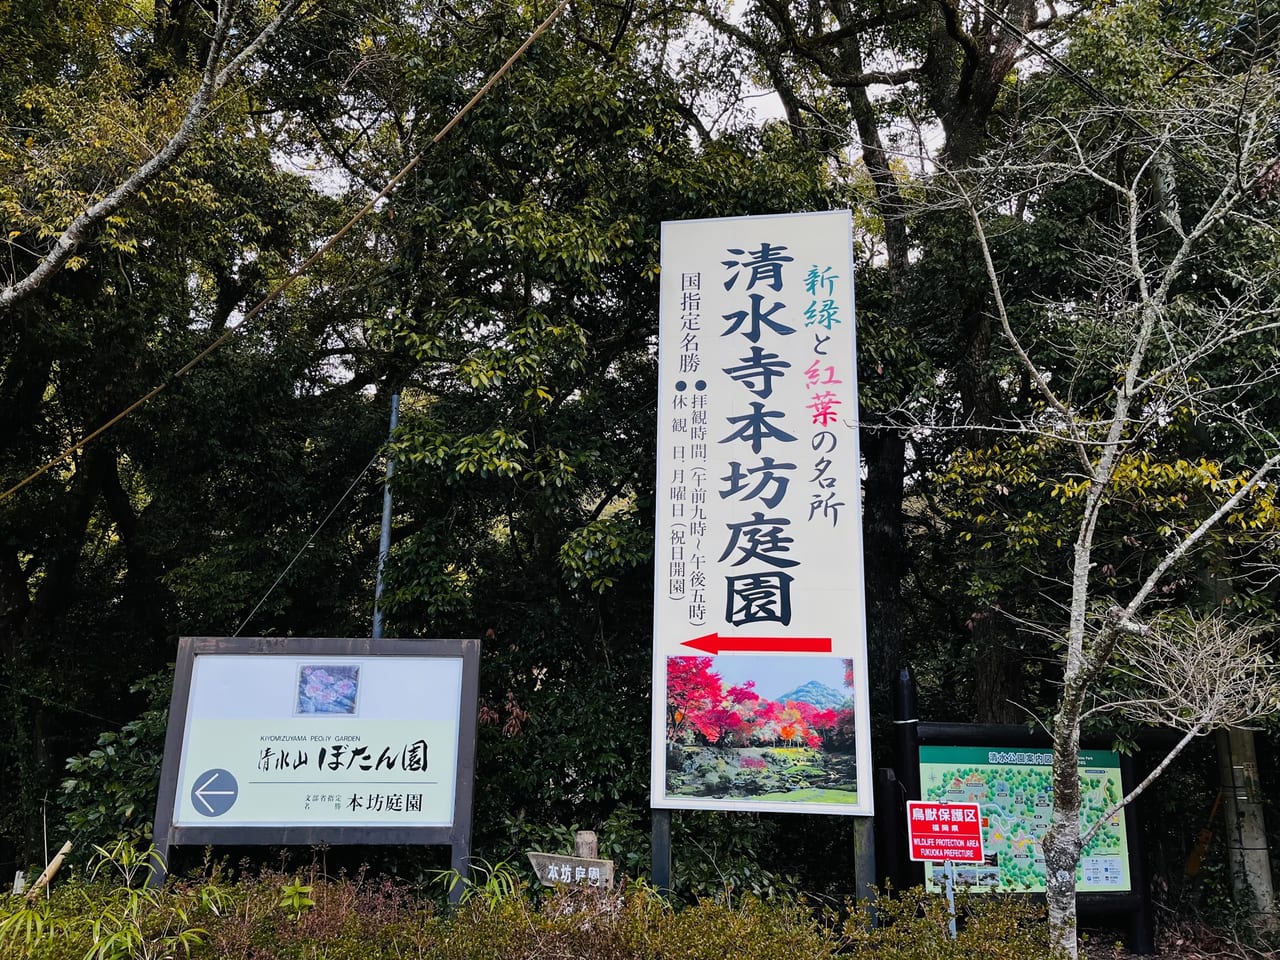 みやま市清水山荘で開催されるゆめmaRche